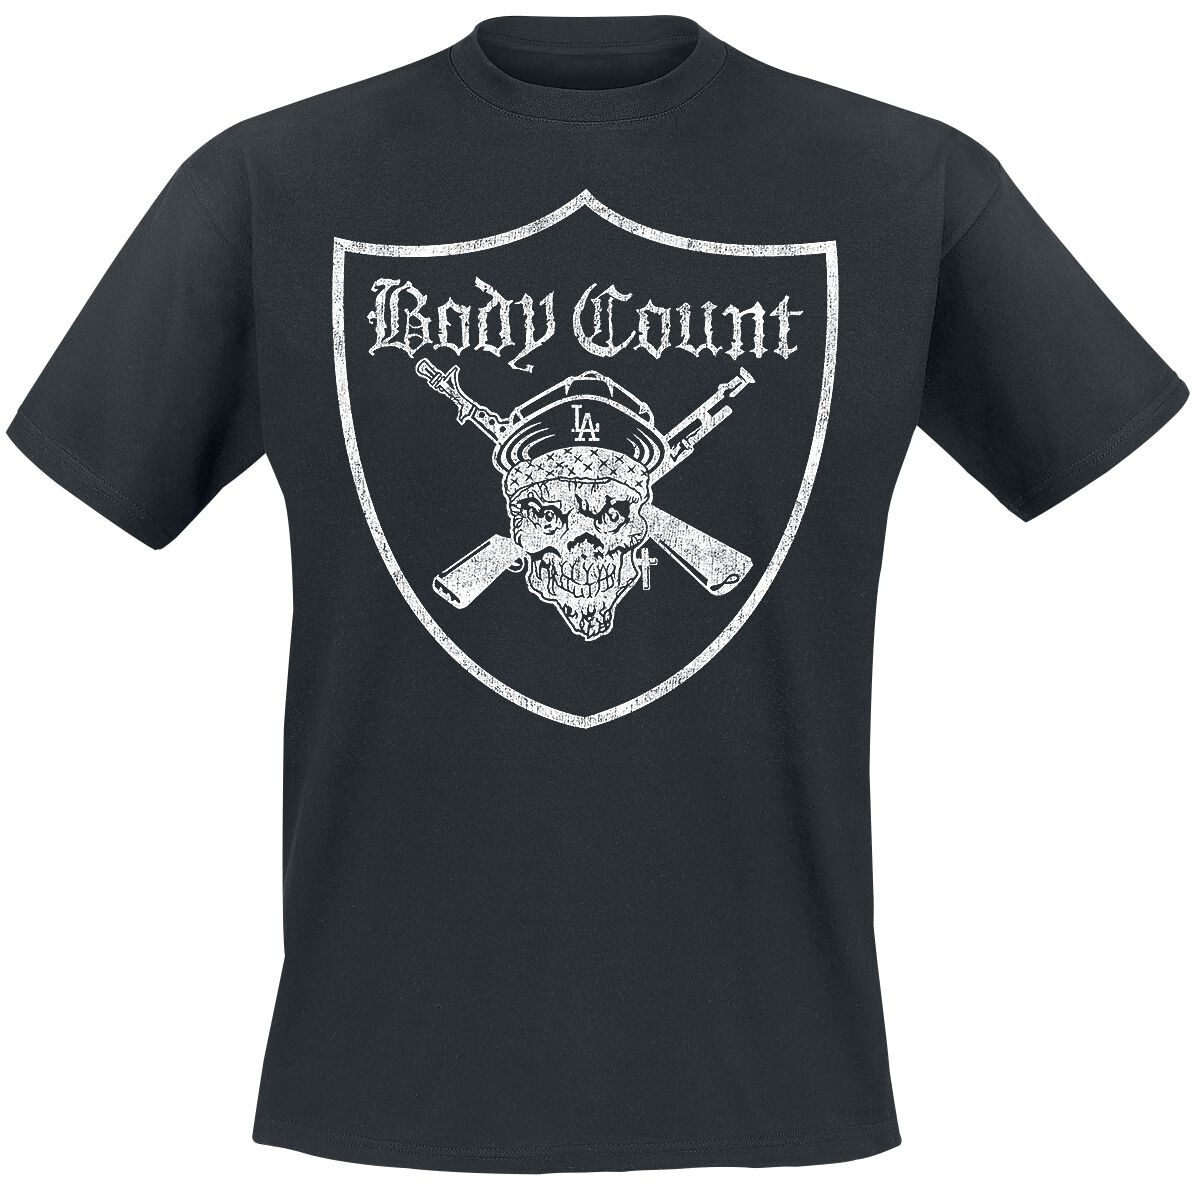 Levně Body Count Gunner Pirate Shield Tričko černá